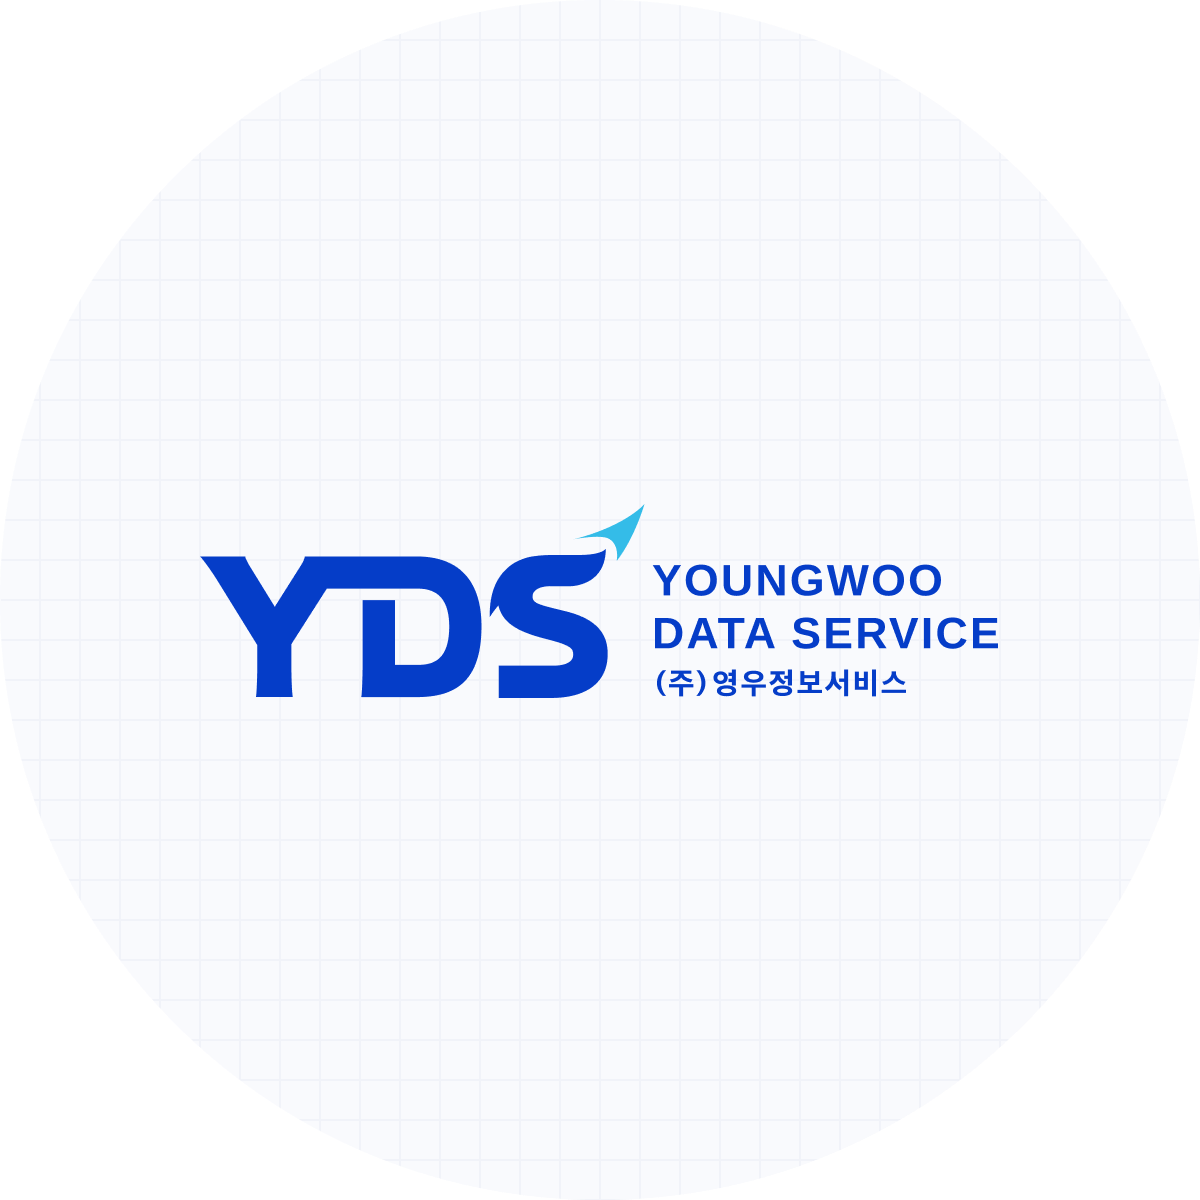 YDS (주) 영우정보서비스 로고